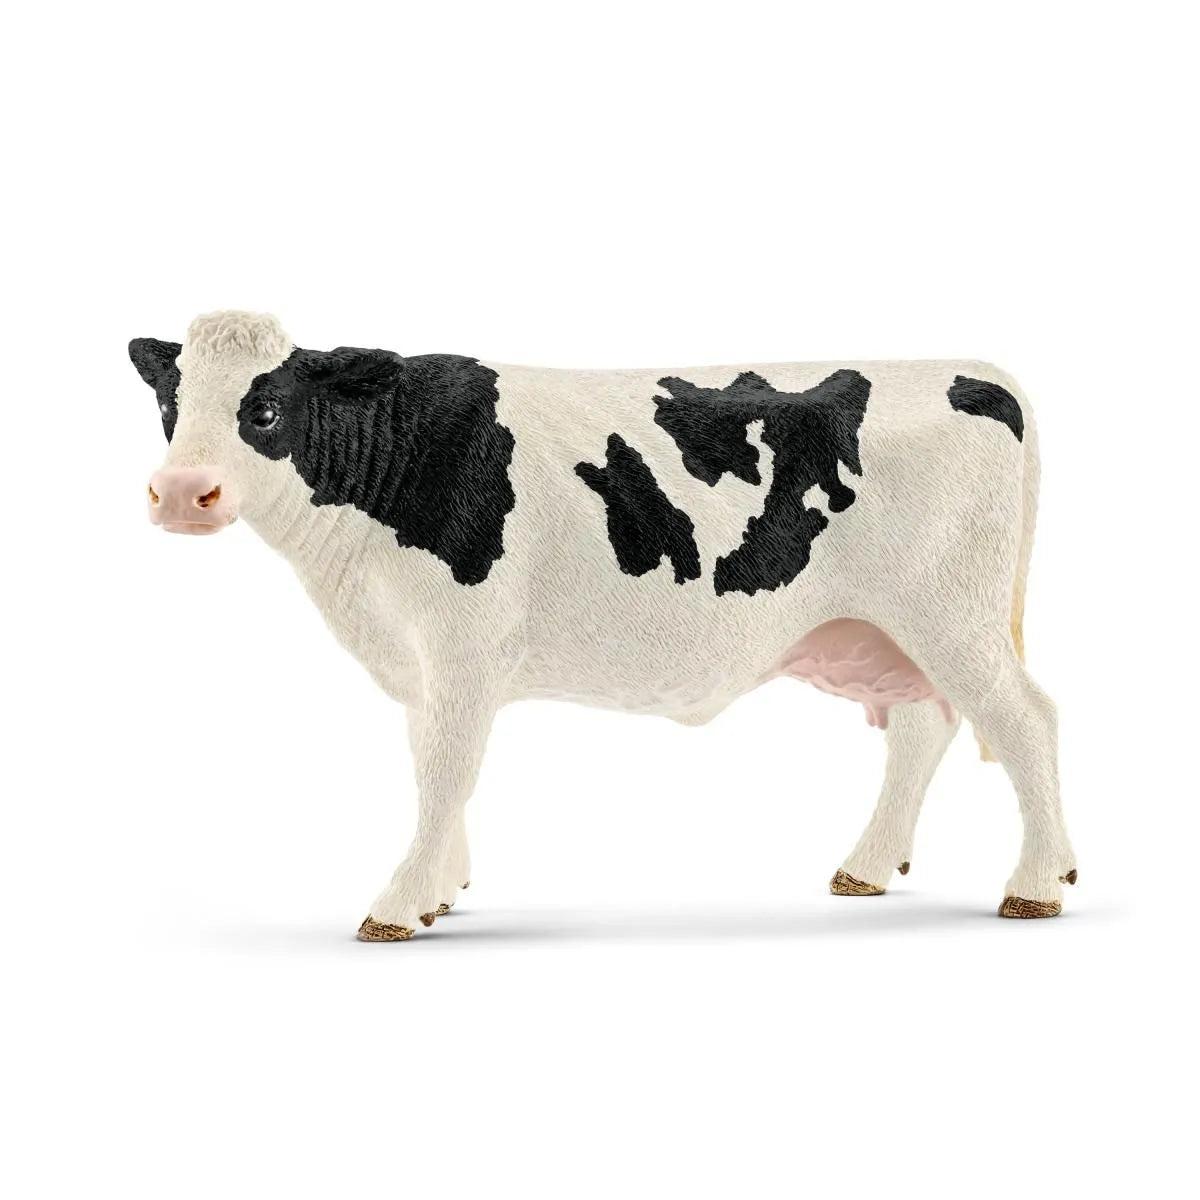 Vache Holstein